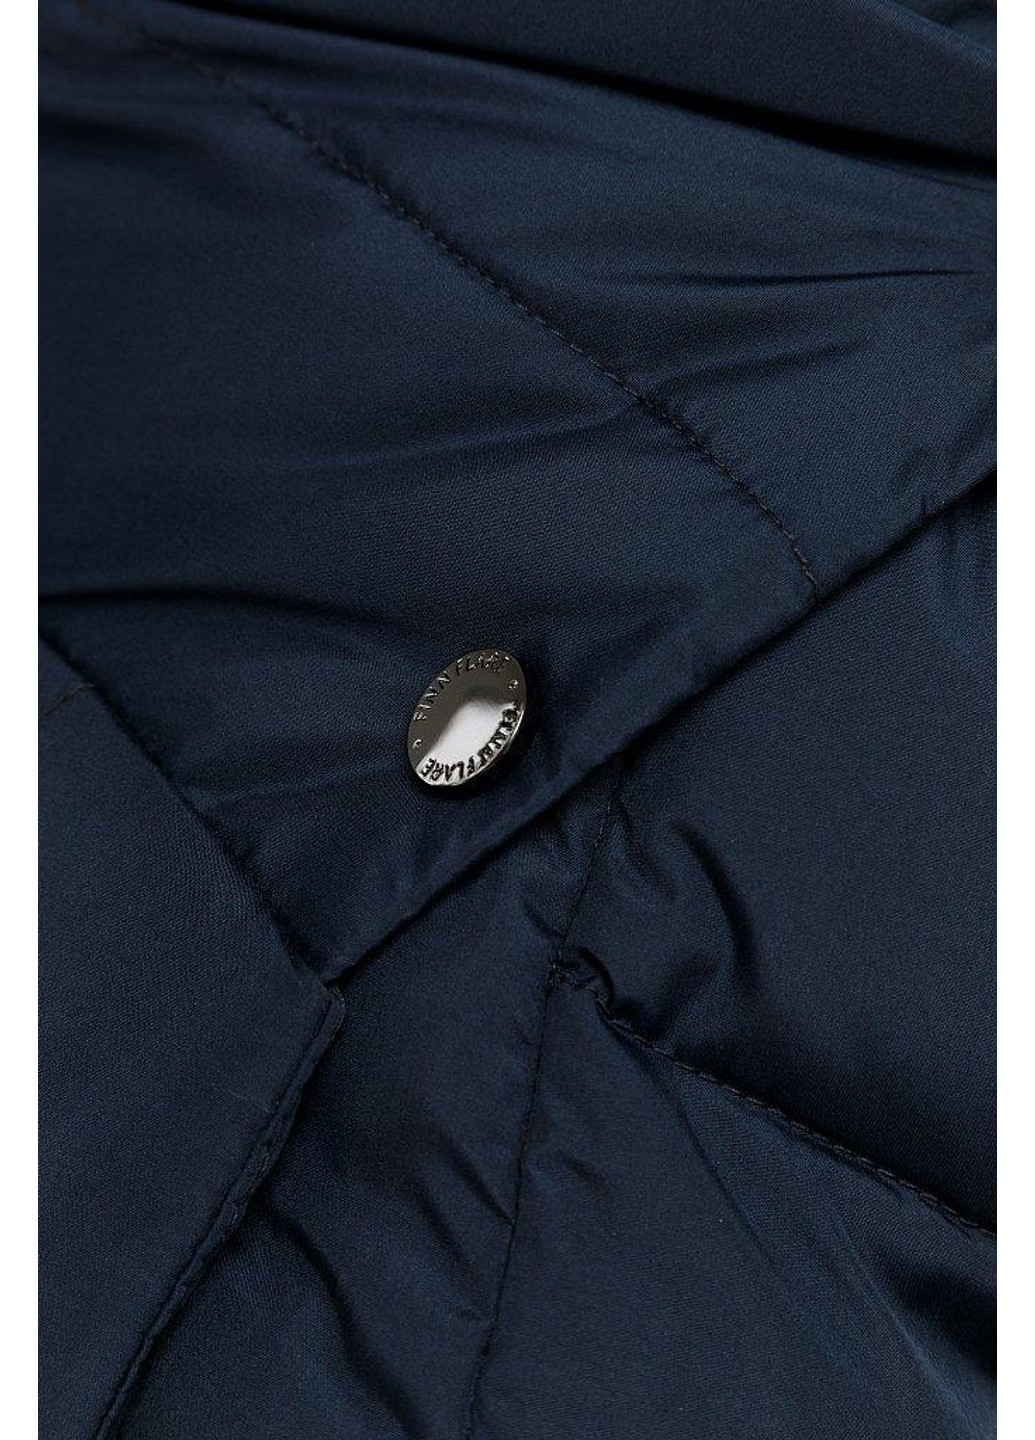 Темно-синяя зимняя зимняя куртка w19-11005-101 Finn Flare